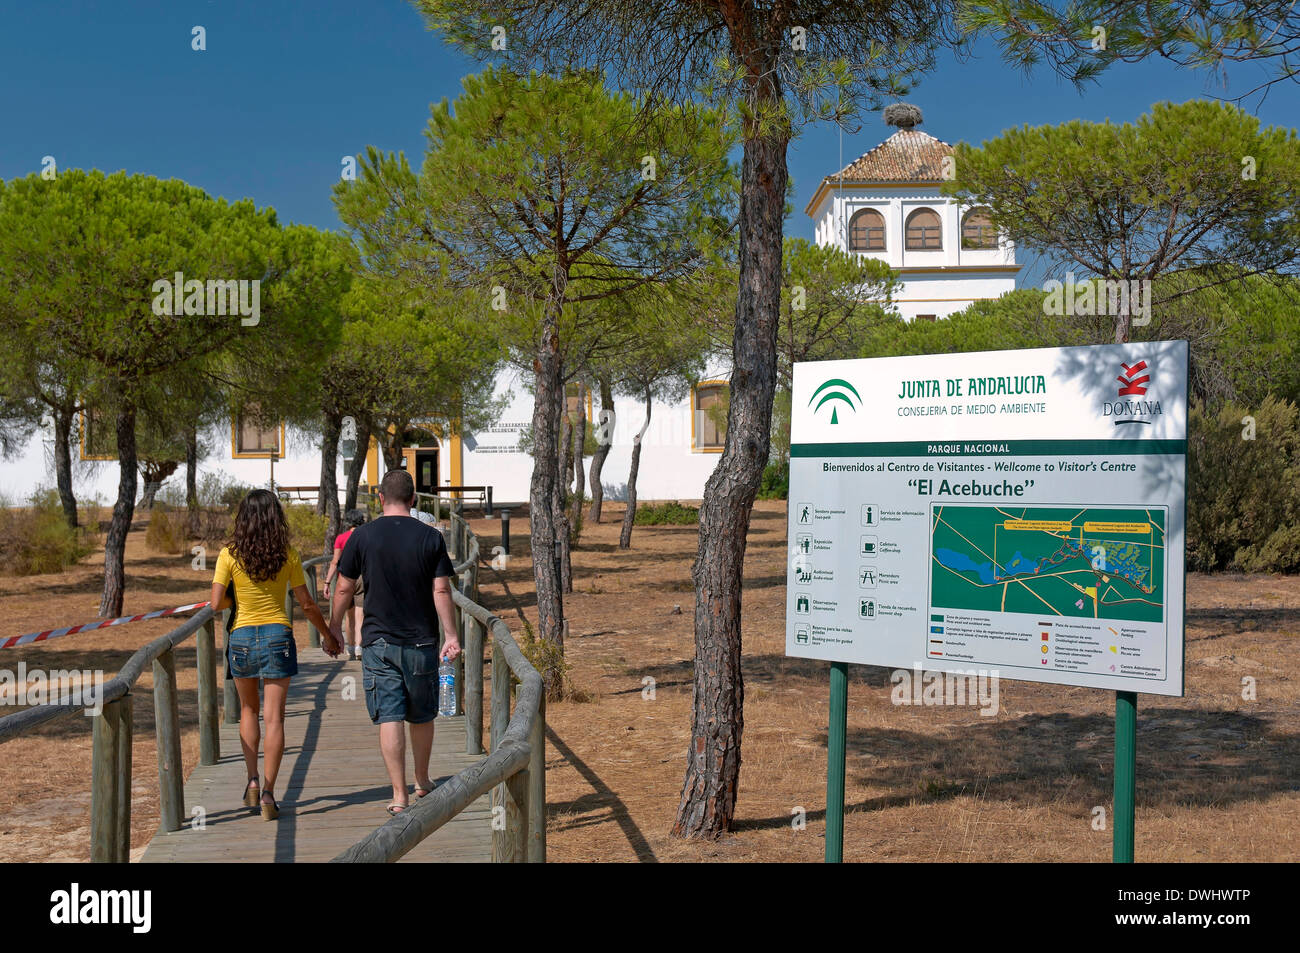 Centro de Visitantes El Acebuche, Parque Nacional de Doñana, Almonte, provincia de Huelva, en la región de Andalucía, España, Europa Foto de stock